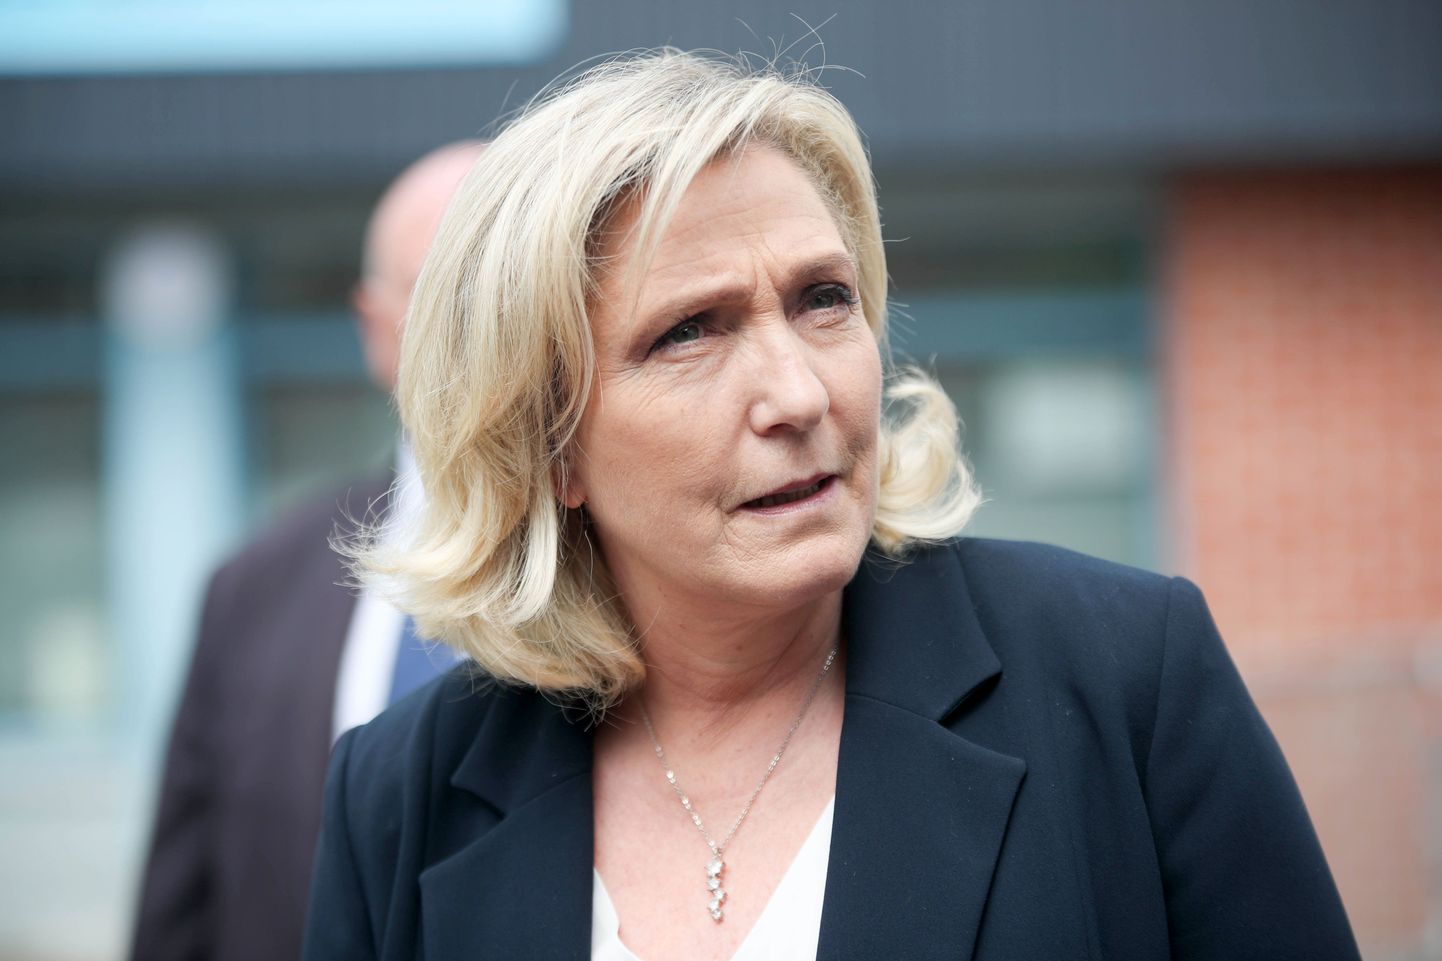 Prantsuse paremäärmusliku erakonna Rassemblement National (RN) liider ja parlamendisaadik Marine Le Pen.